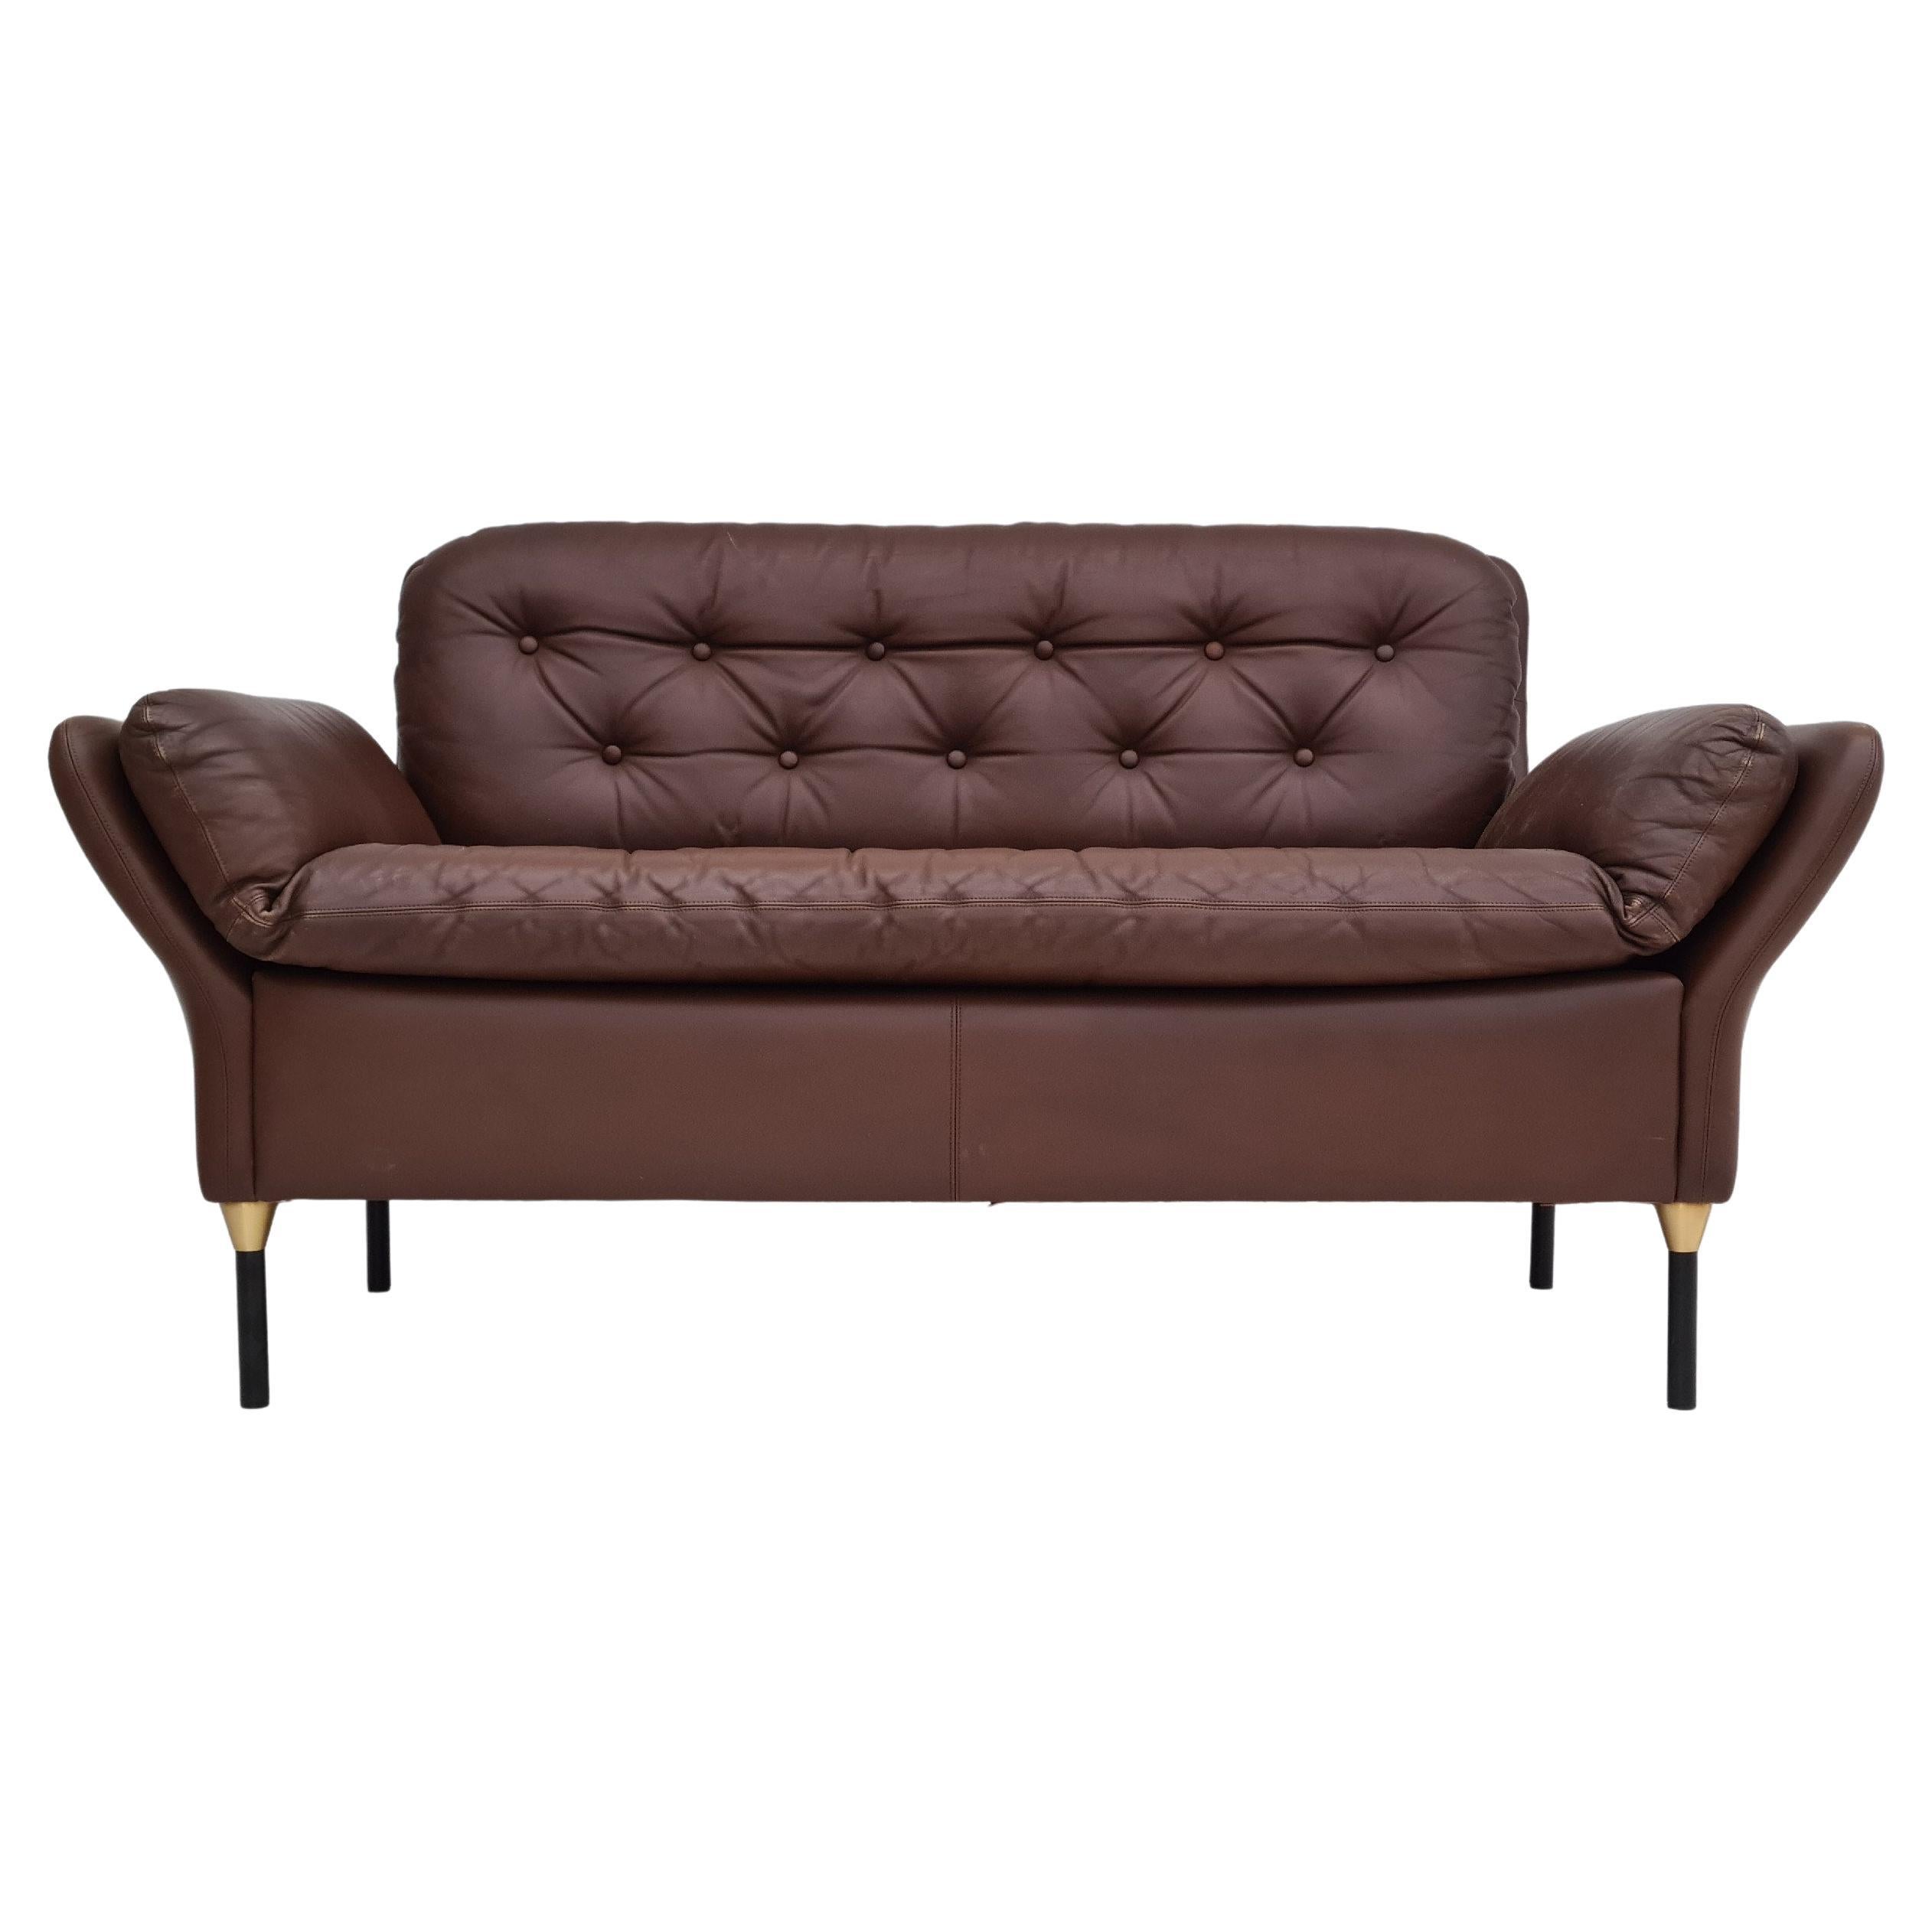 70er Jahre, Dänisches 2-Sitzer Sofa, Original Brown Leder